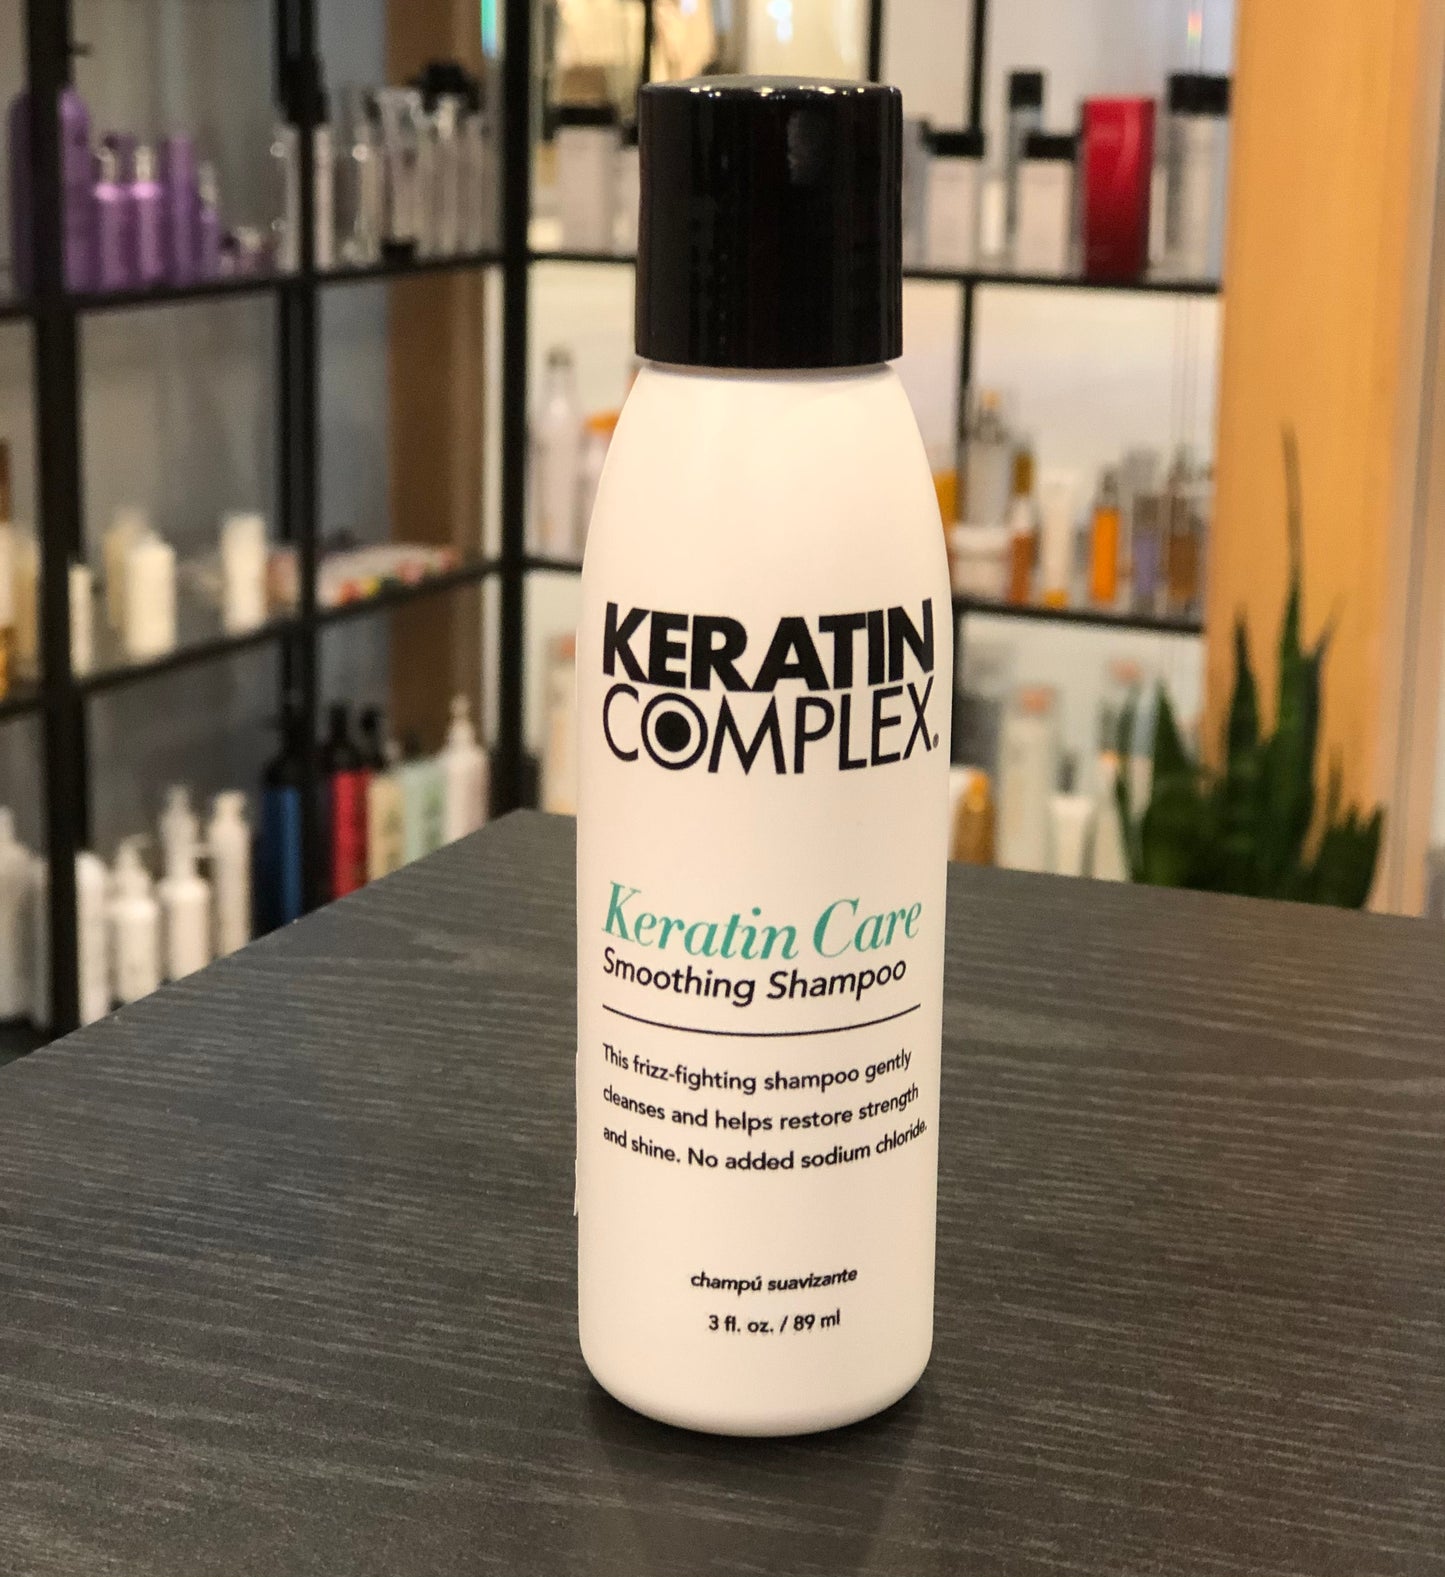 Keratin complex - Keratin Care shampoo 3 fl. oz./ 89 ml